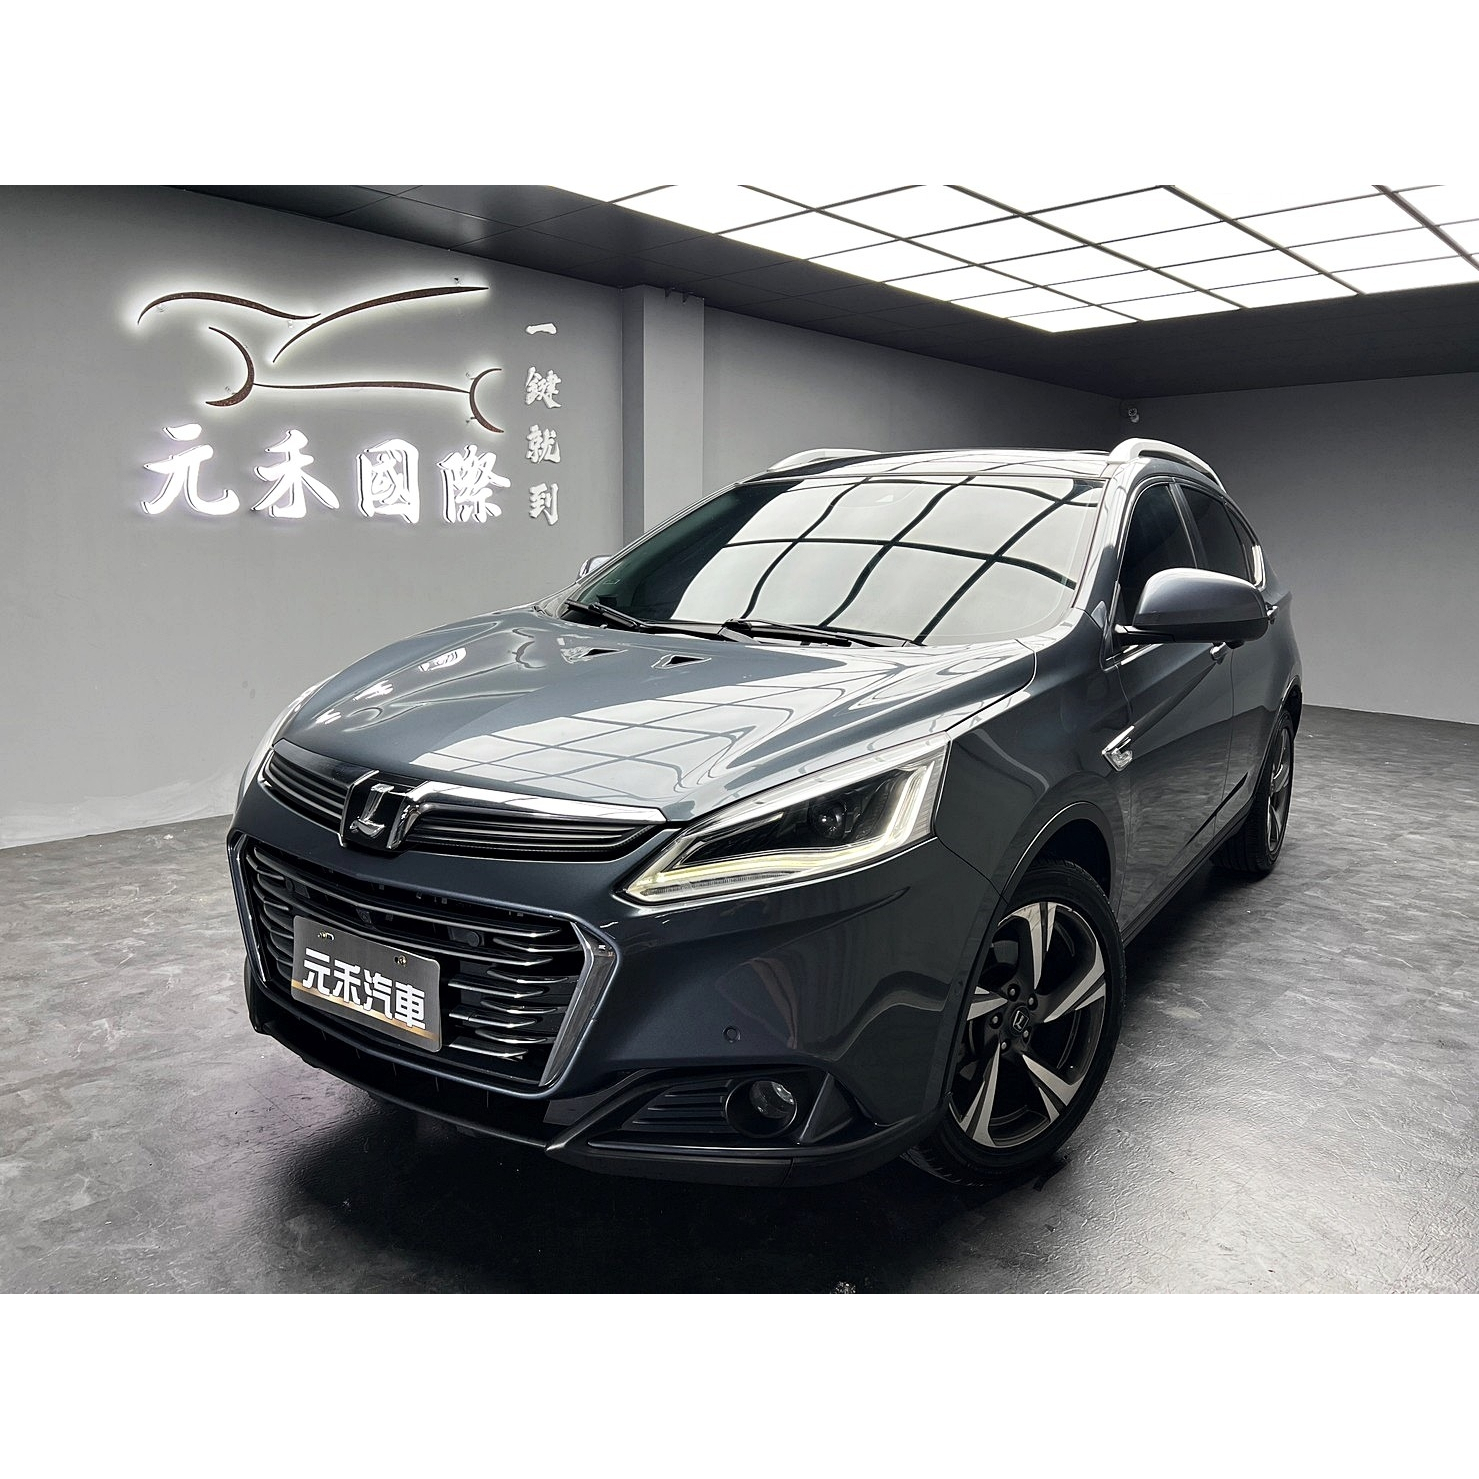 40.8萬 2018年式 Luxgen U6 GT AR環景版 1.8 汽油 灰黑色 元禾阿佑